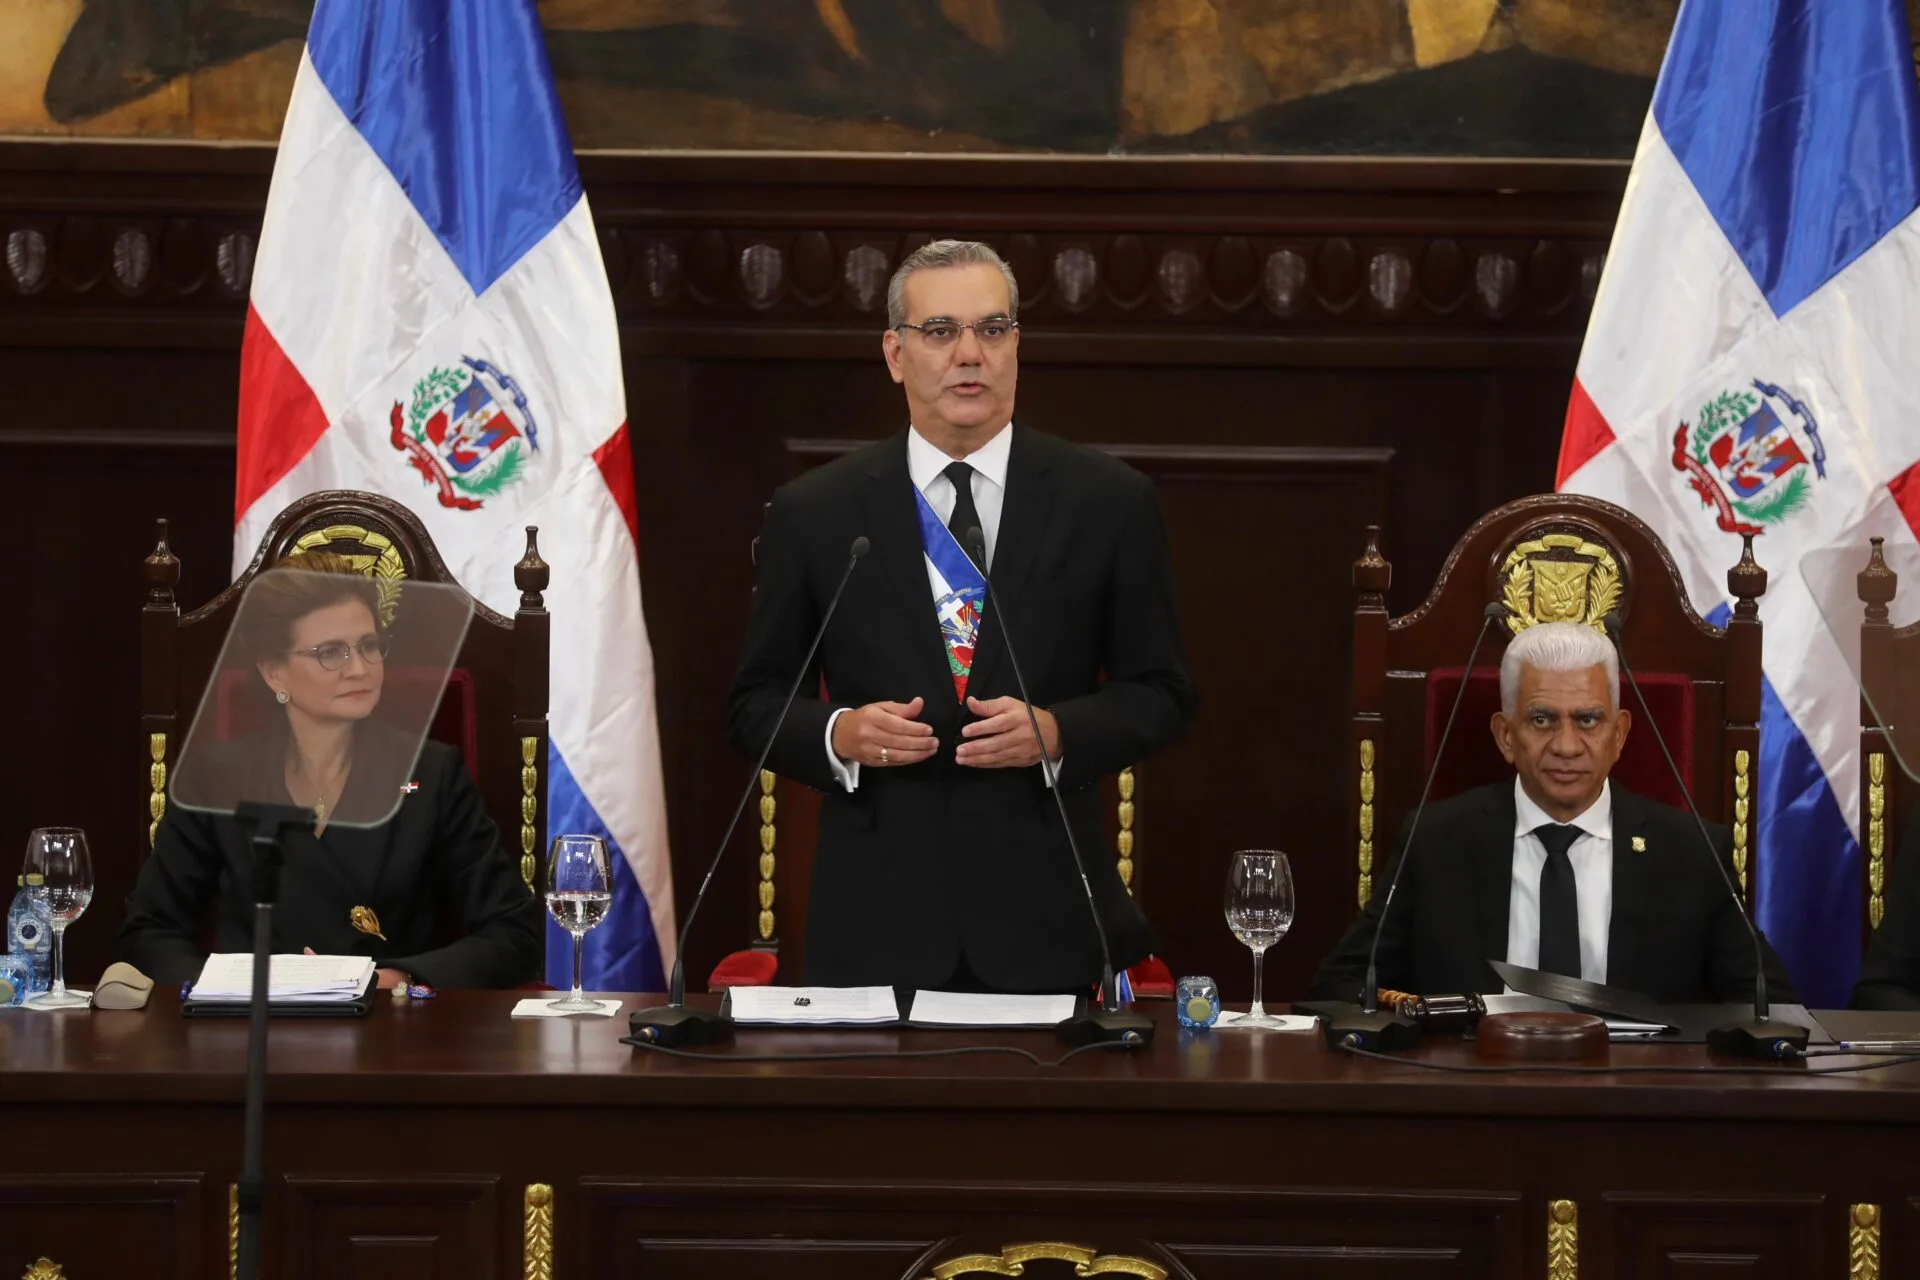 El Legado de Luis Abinader: Compromiso y progreso para la República Dominicana